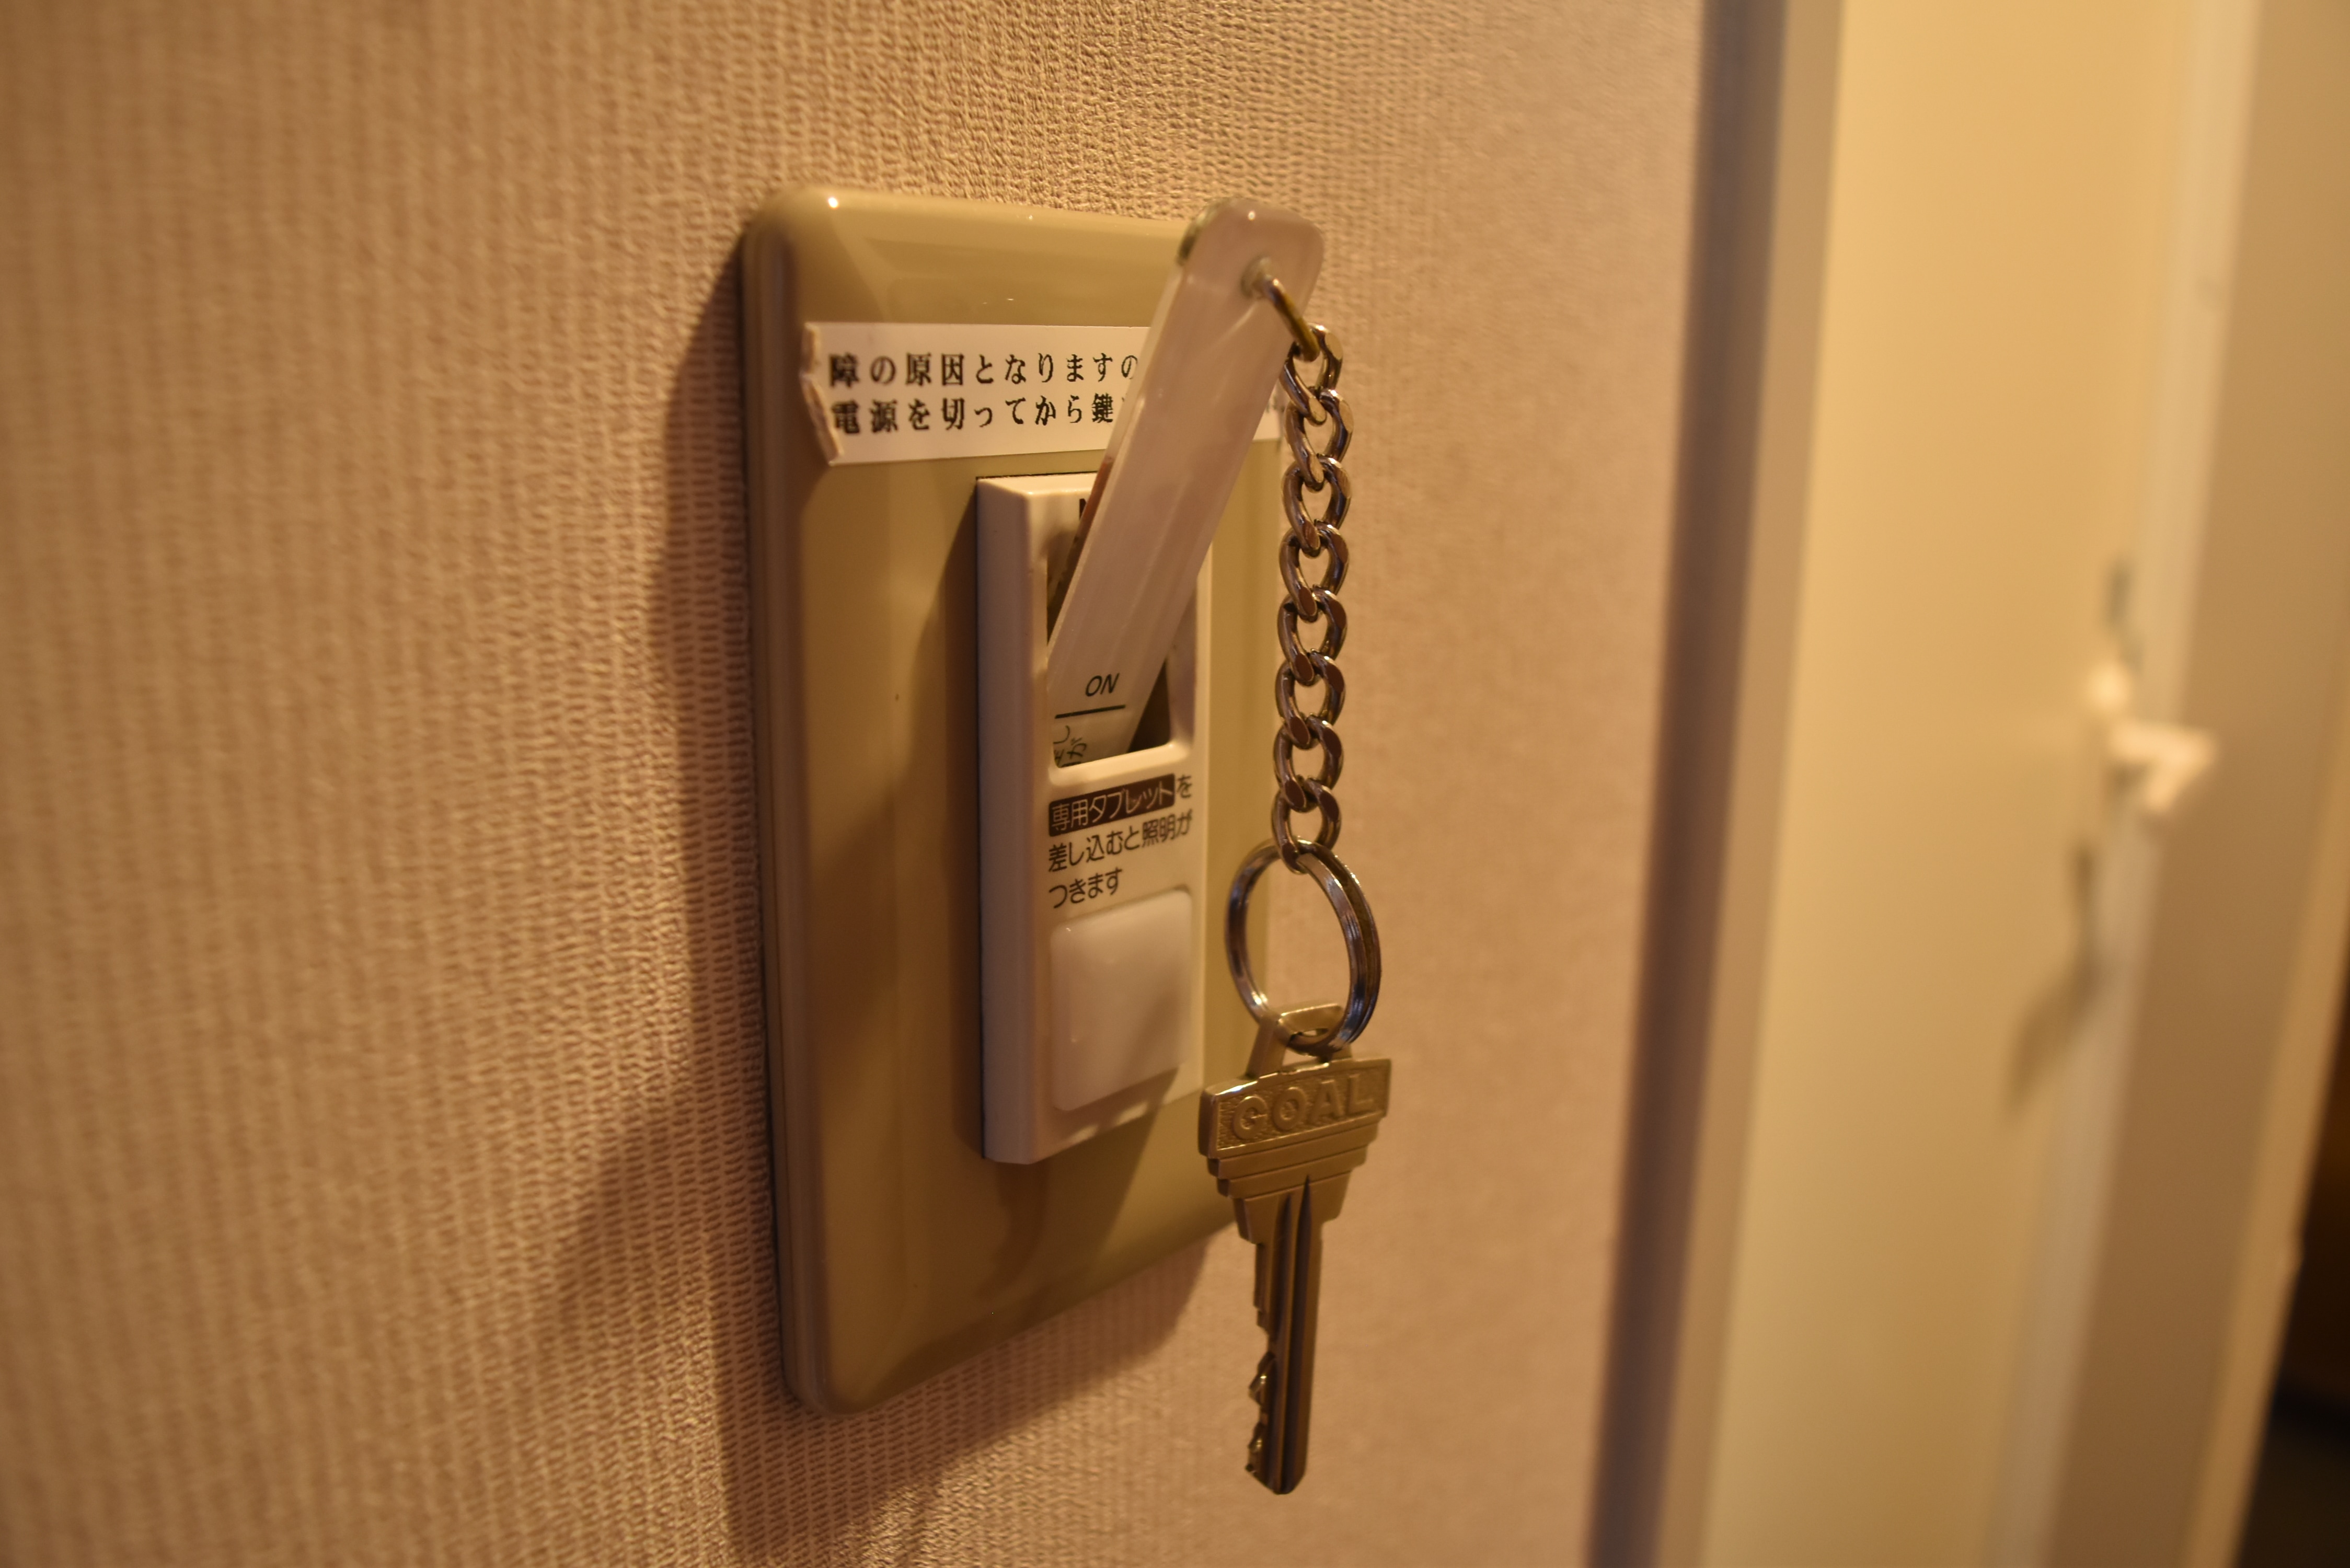 เป็นระบบเปิดไฟในห้องโดยการใส่กุญแจห้อง